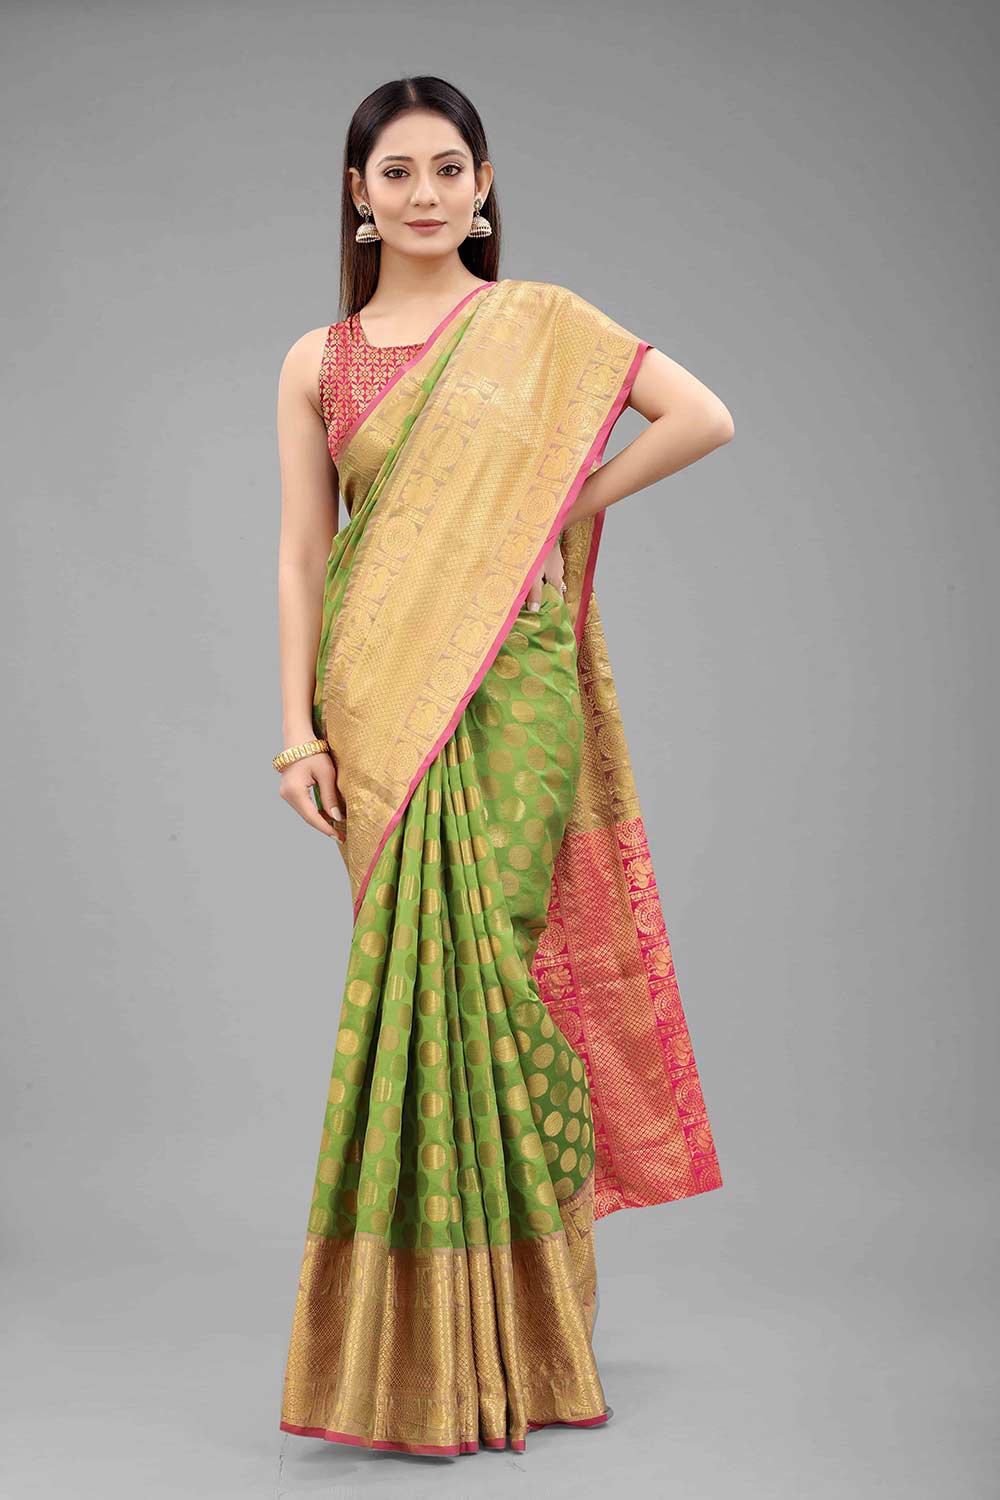 Buy Gajaria Multi-Color Art Silk Polka Dot Banarasi One Minute Saree Online - Back